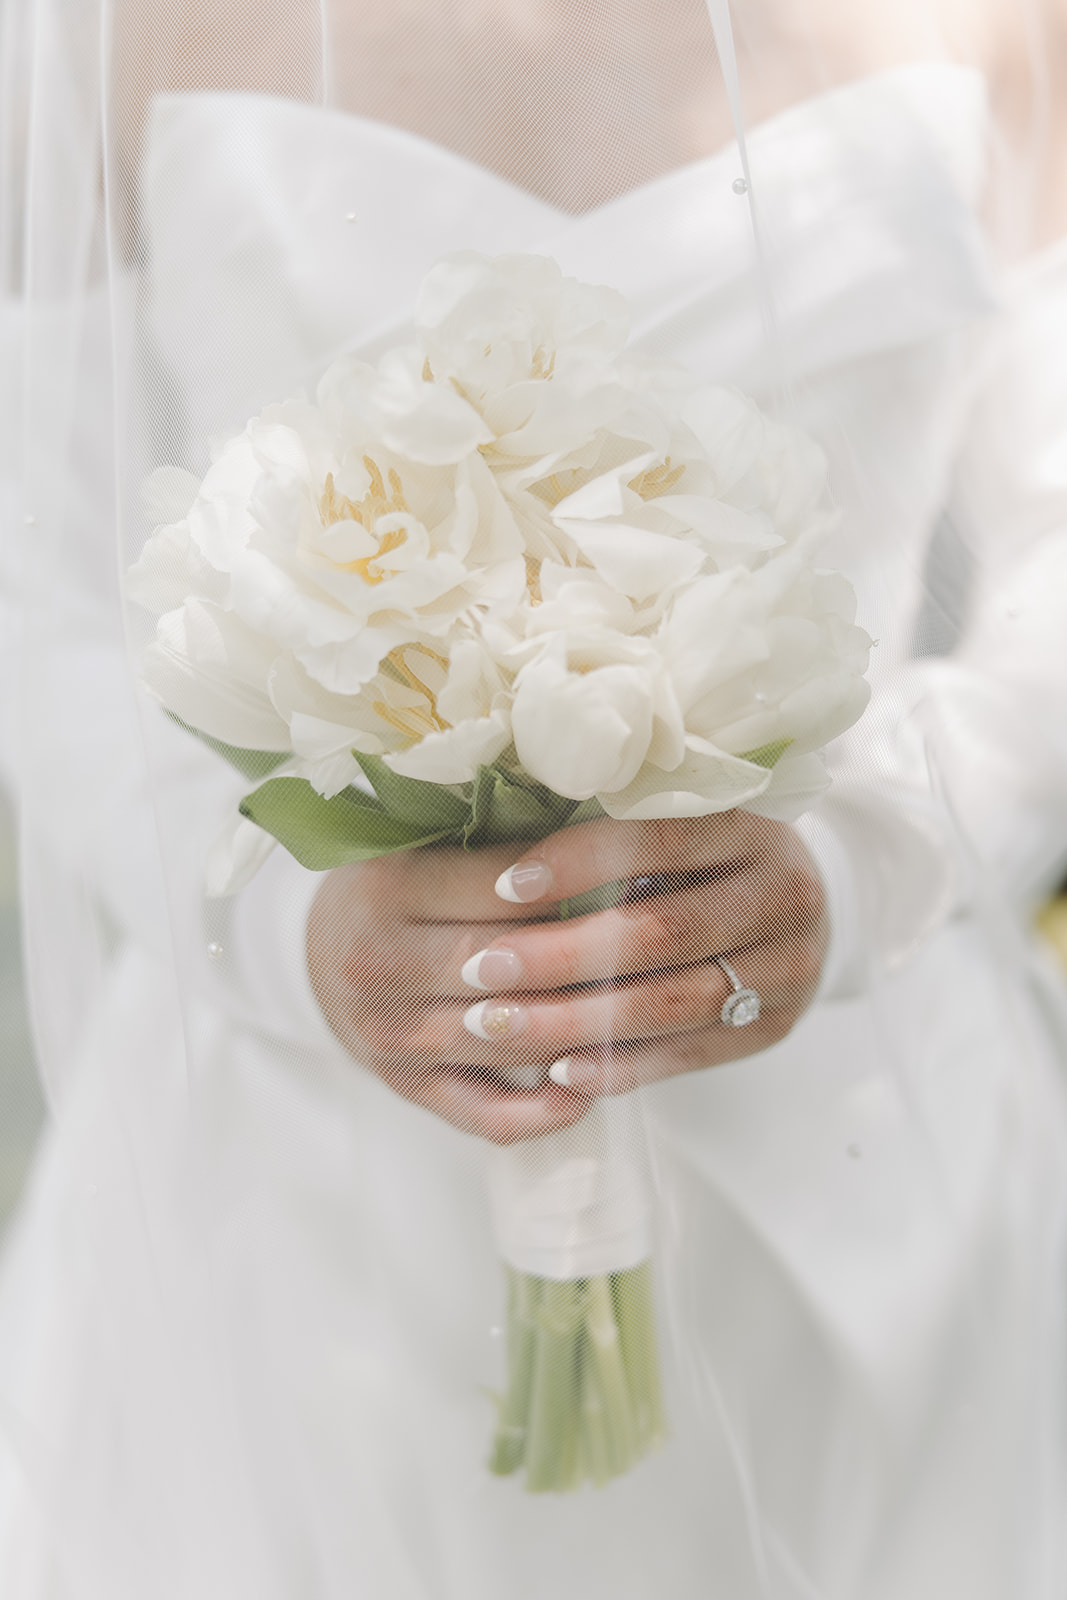 bride holds white wedding bouquet